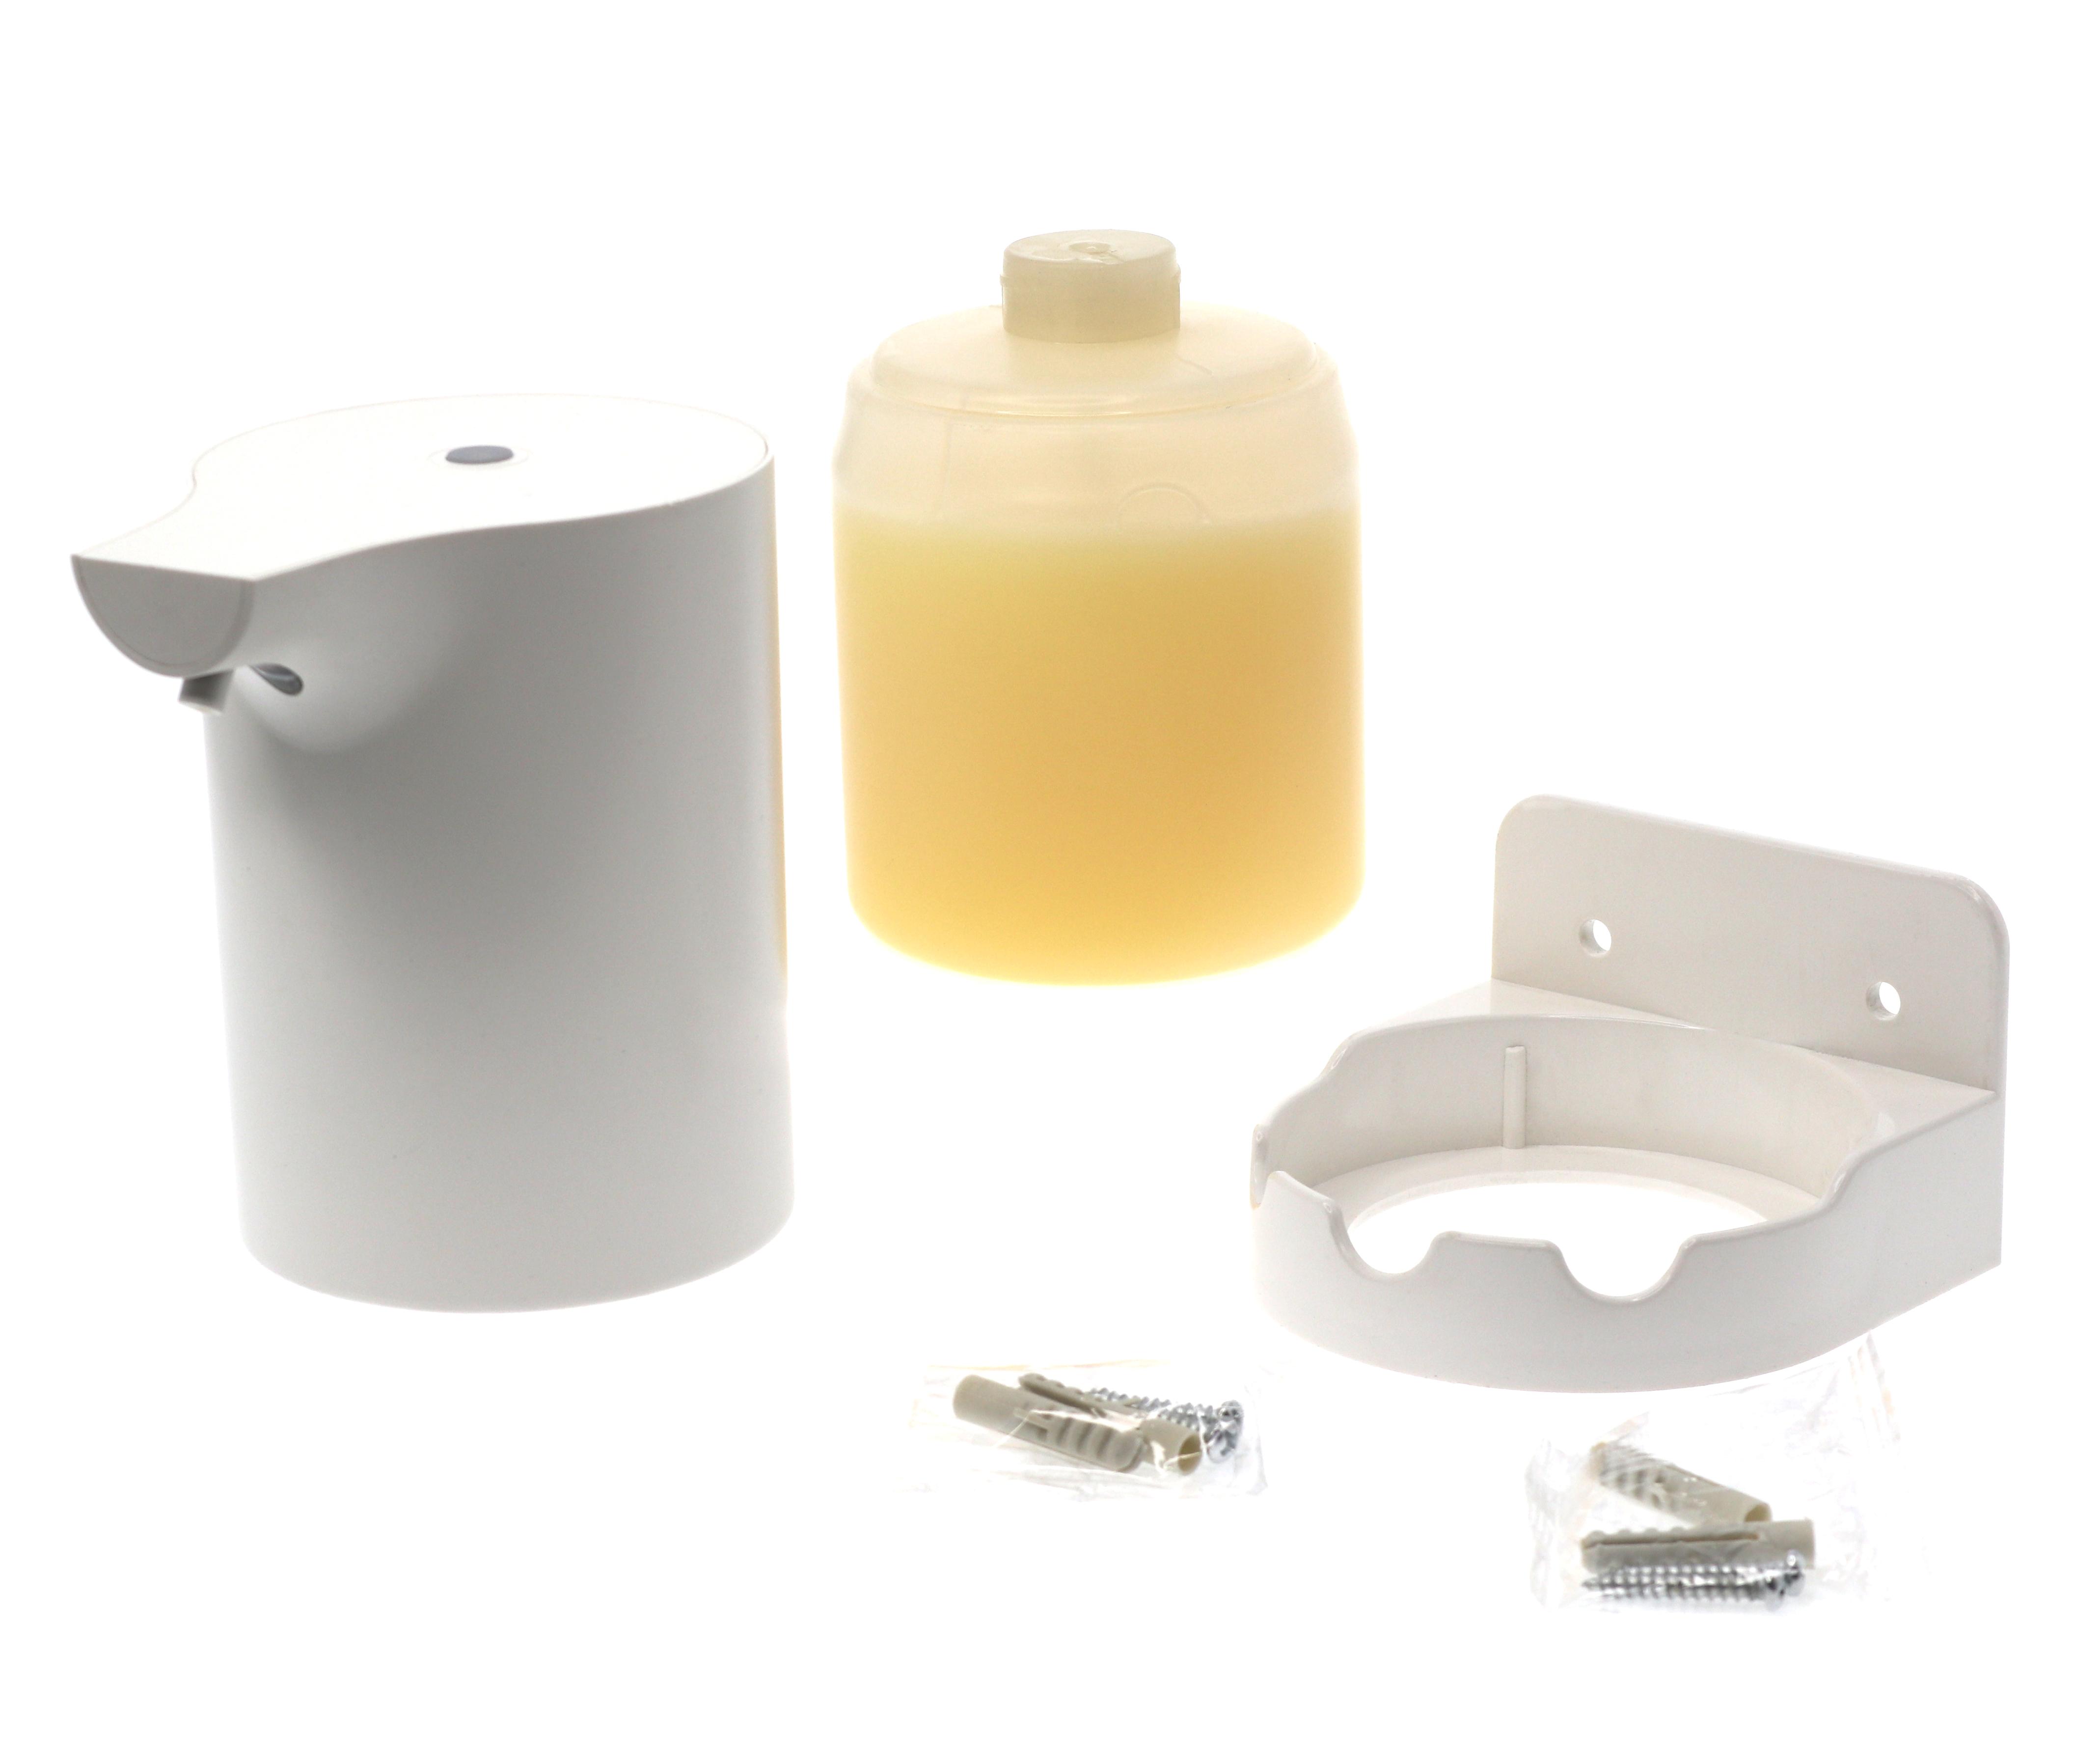 Дозатор диспенсер для жидкого мыла сенсорный с датчиком движения пенообразующий на 500мл CG Soap dispenser